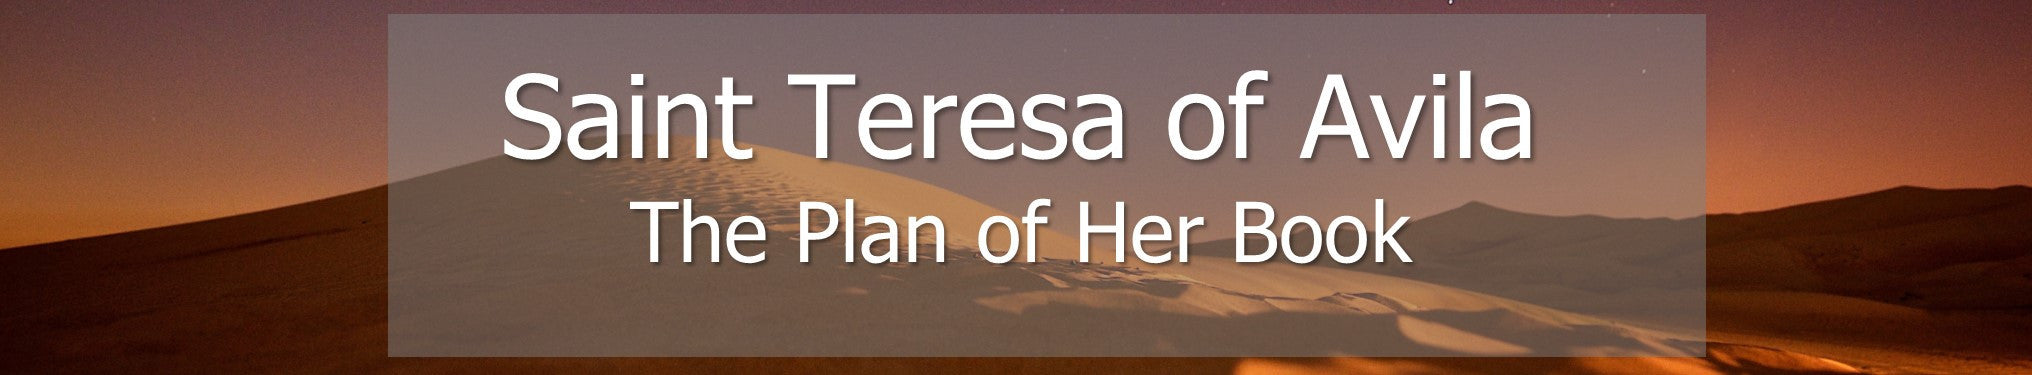 Saint Teresa of Avila - The Plan of Her Book